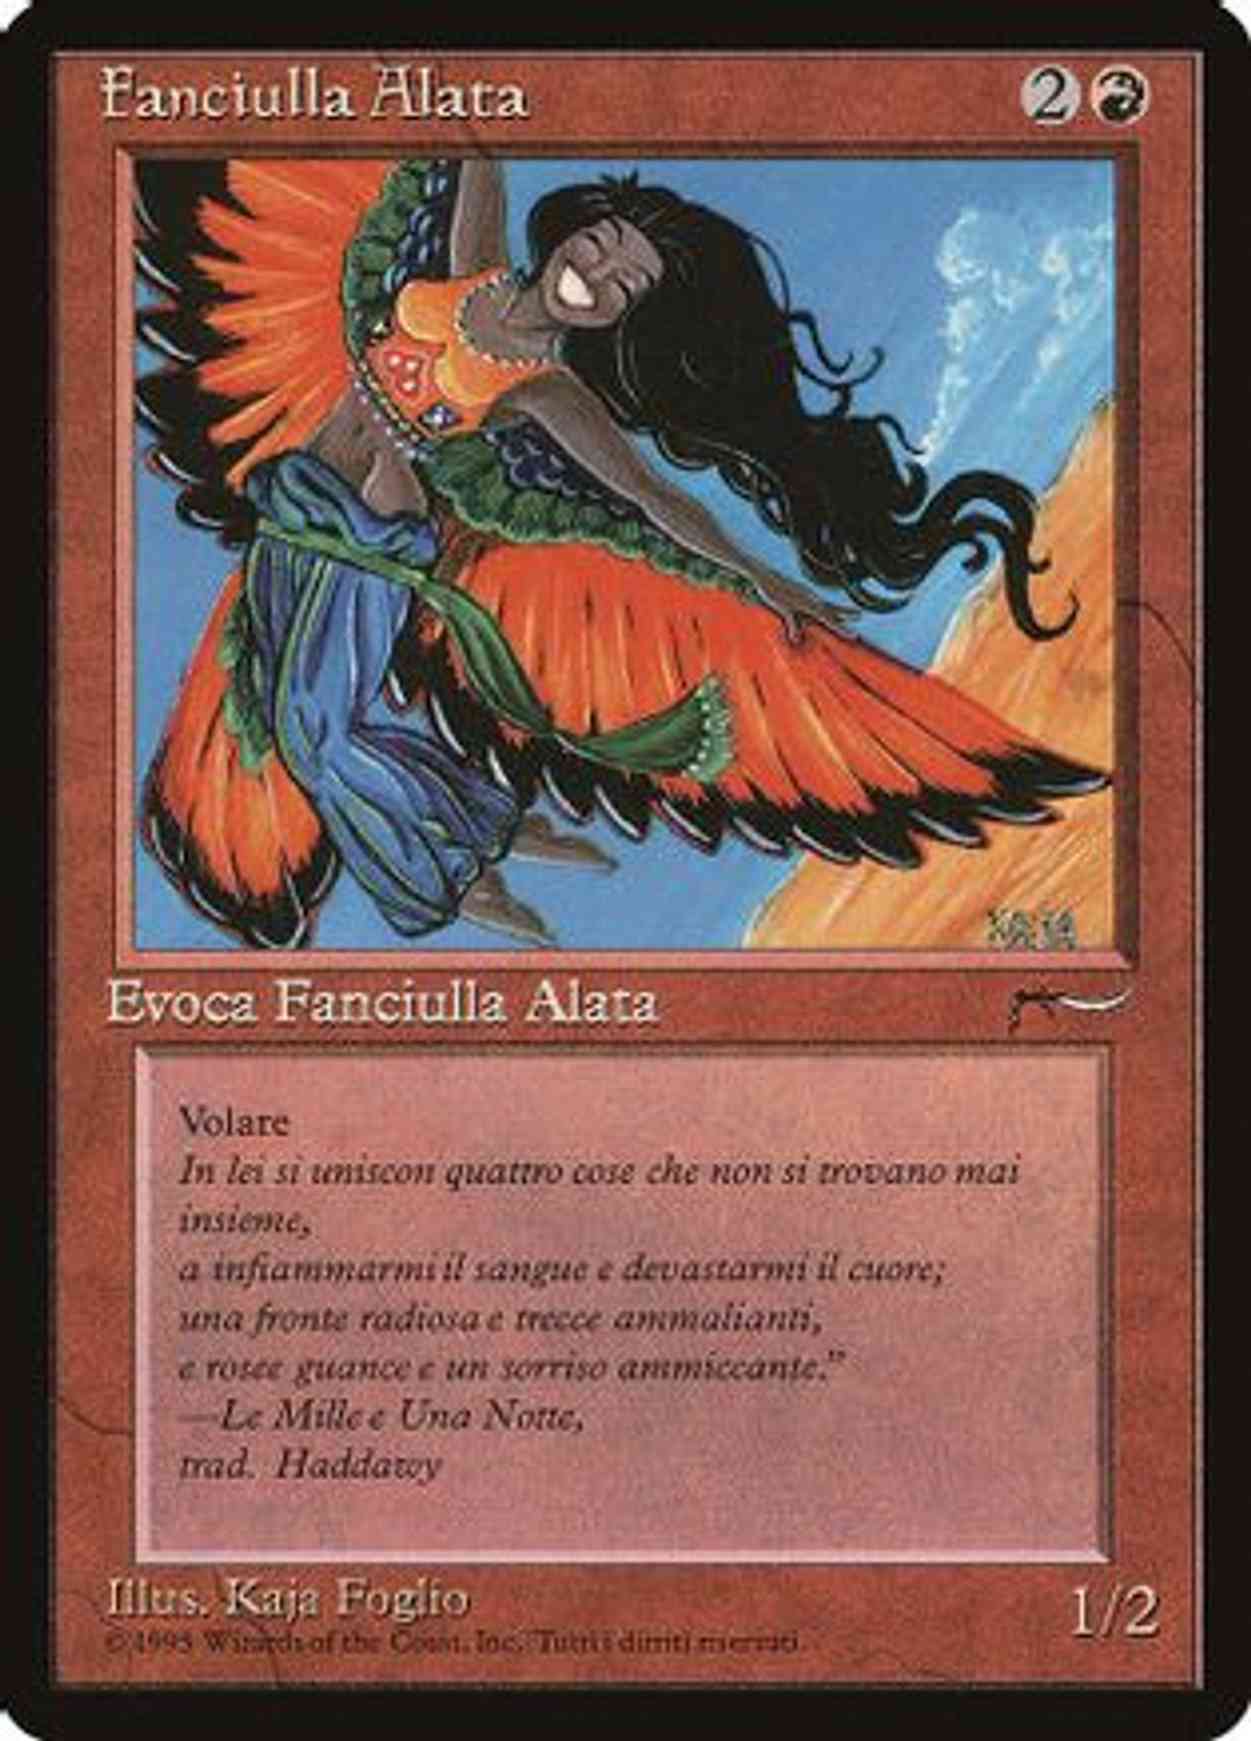 Bird Maiden (Italian) - "Fanciulla Alata" magic card front